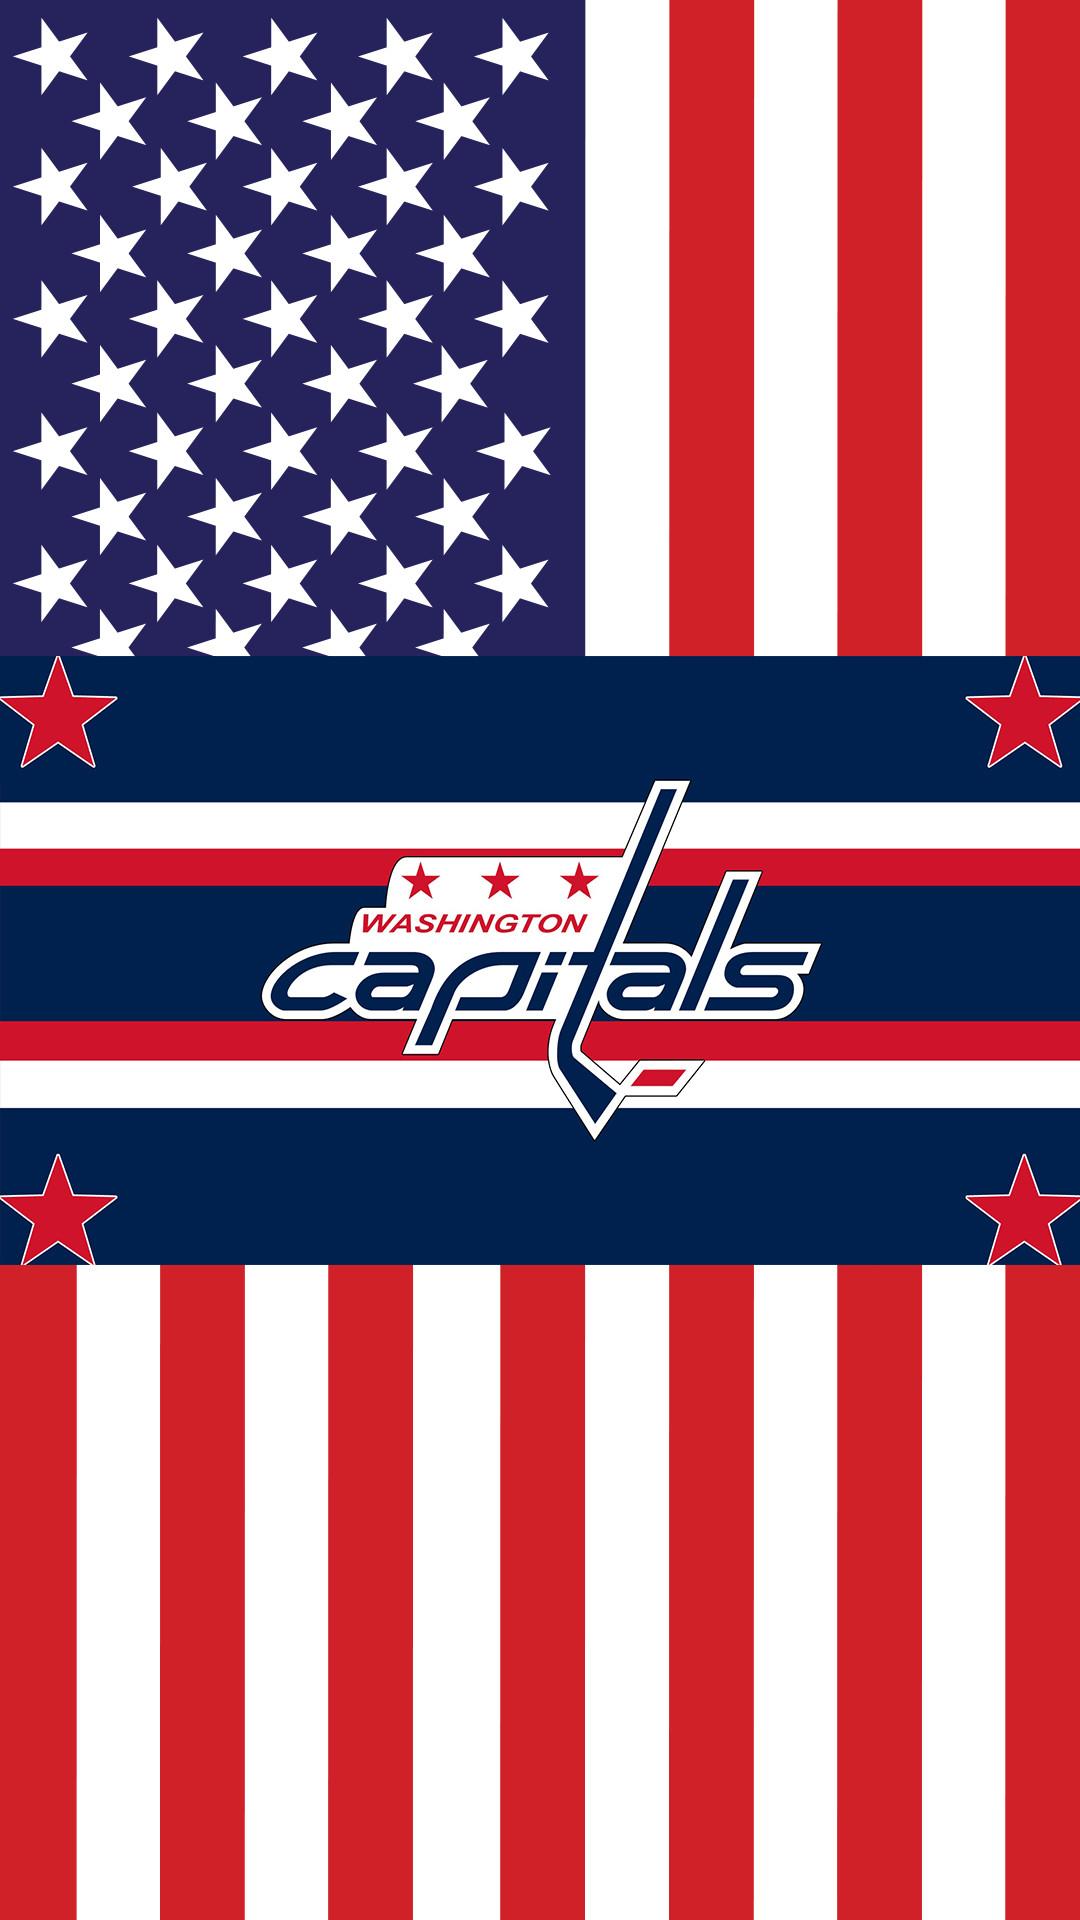 Washington Capitals (NHL) iPhone X/XS/XR Lock Screen Wallpaper